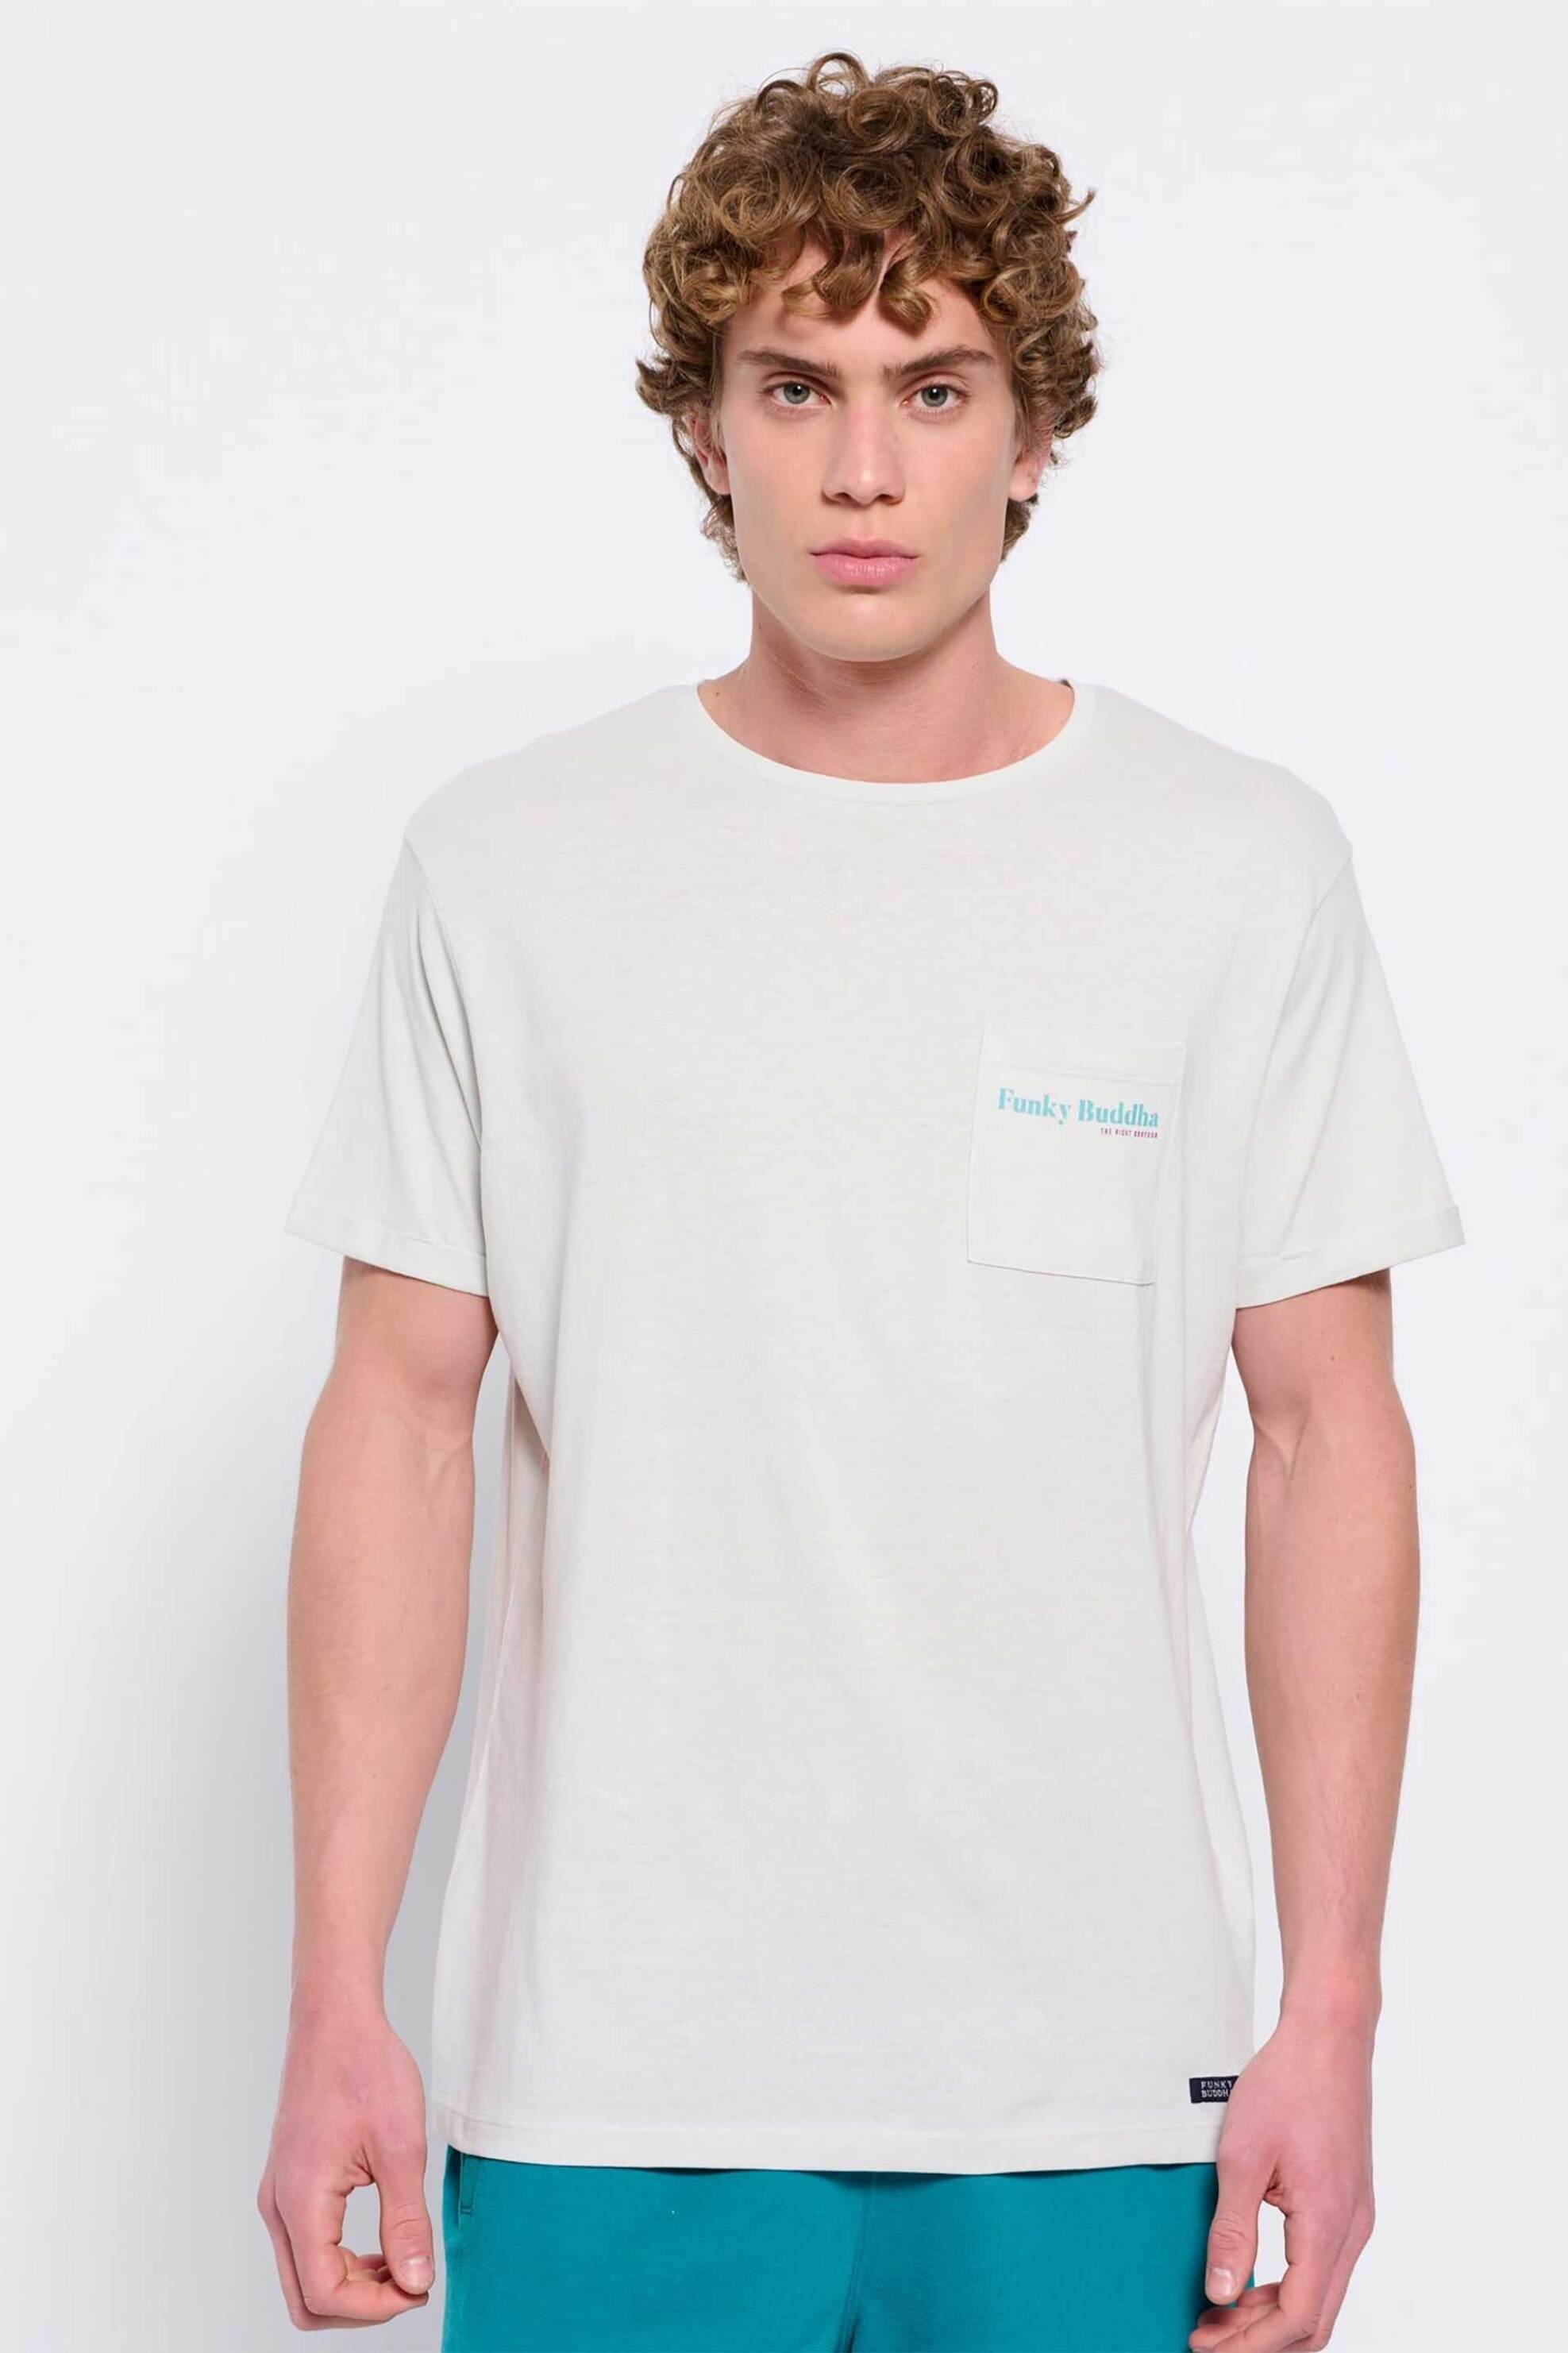 Ανδρική Μόδα > Ανδρικά Ρούχα > Ανδρικές Μπλούζες > Ανδρικά T-Shirts Funky Buddha ανδρικό βαμβακερό T-shirt μονόχρωμο με τσέπη slip και contrast logo print - FBM007-011-04 Κρέμ